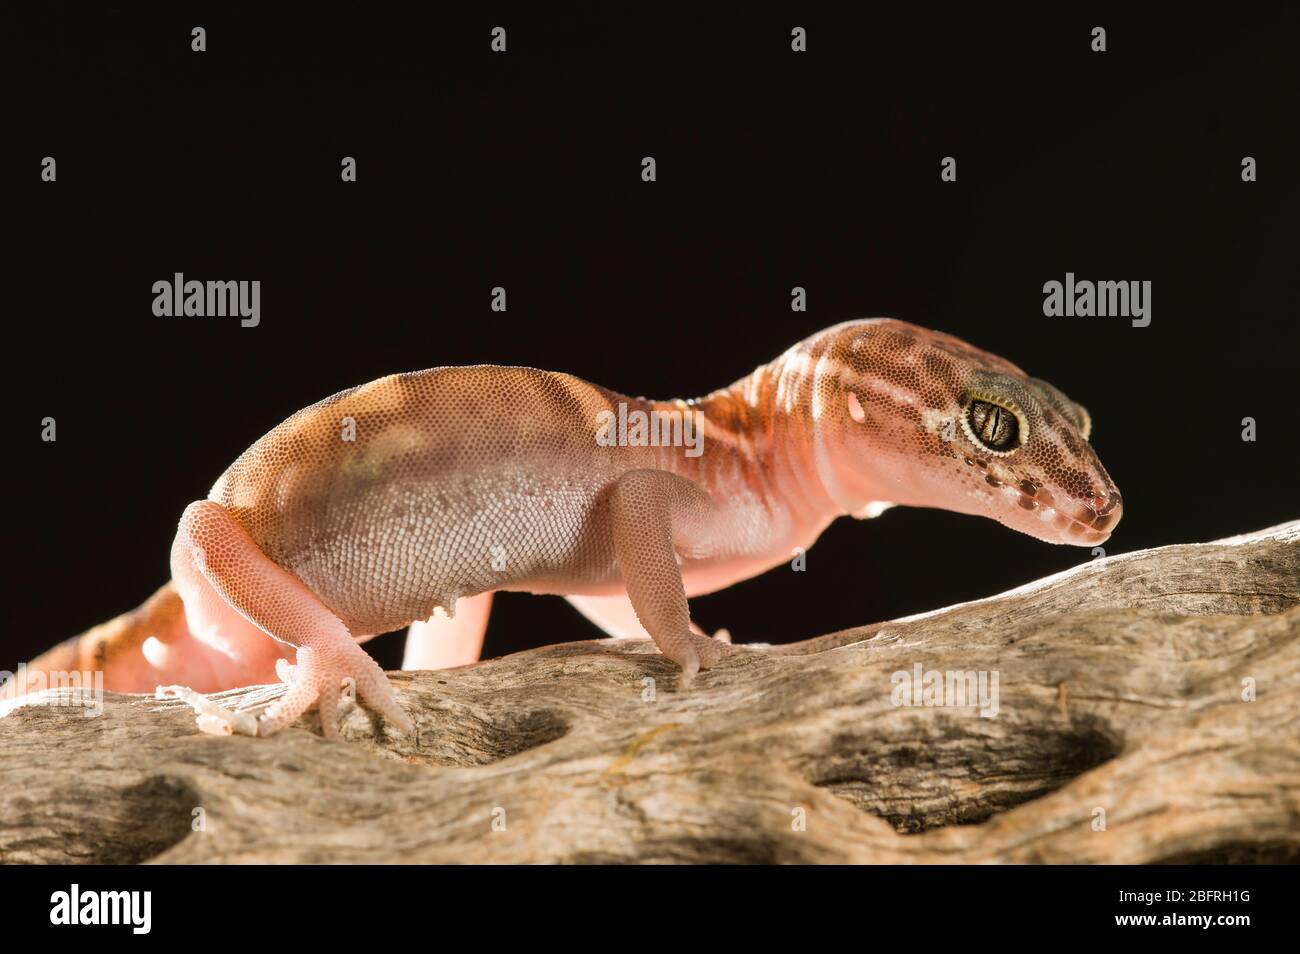 Western Banded Gecko (Coleonyx variegatus), nuit, Sud-Ouest des Etats-Unis, par Dominique Braud/Dembinsky photo Assoc Banque D'Images